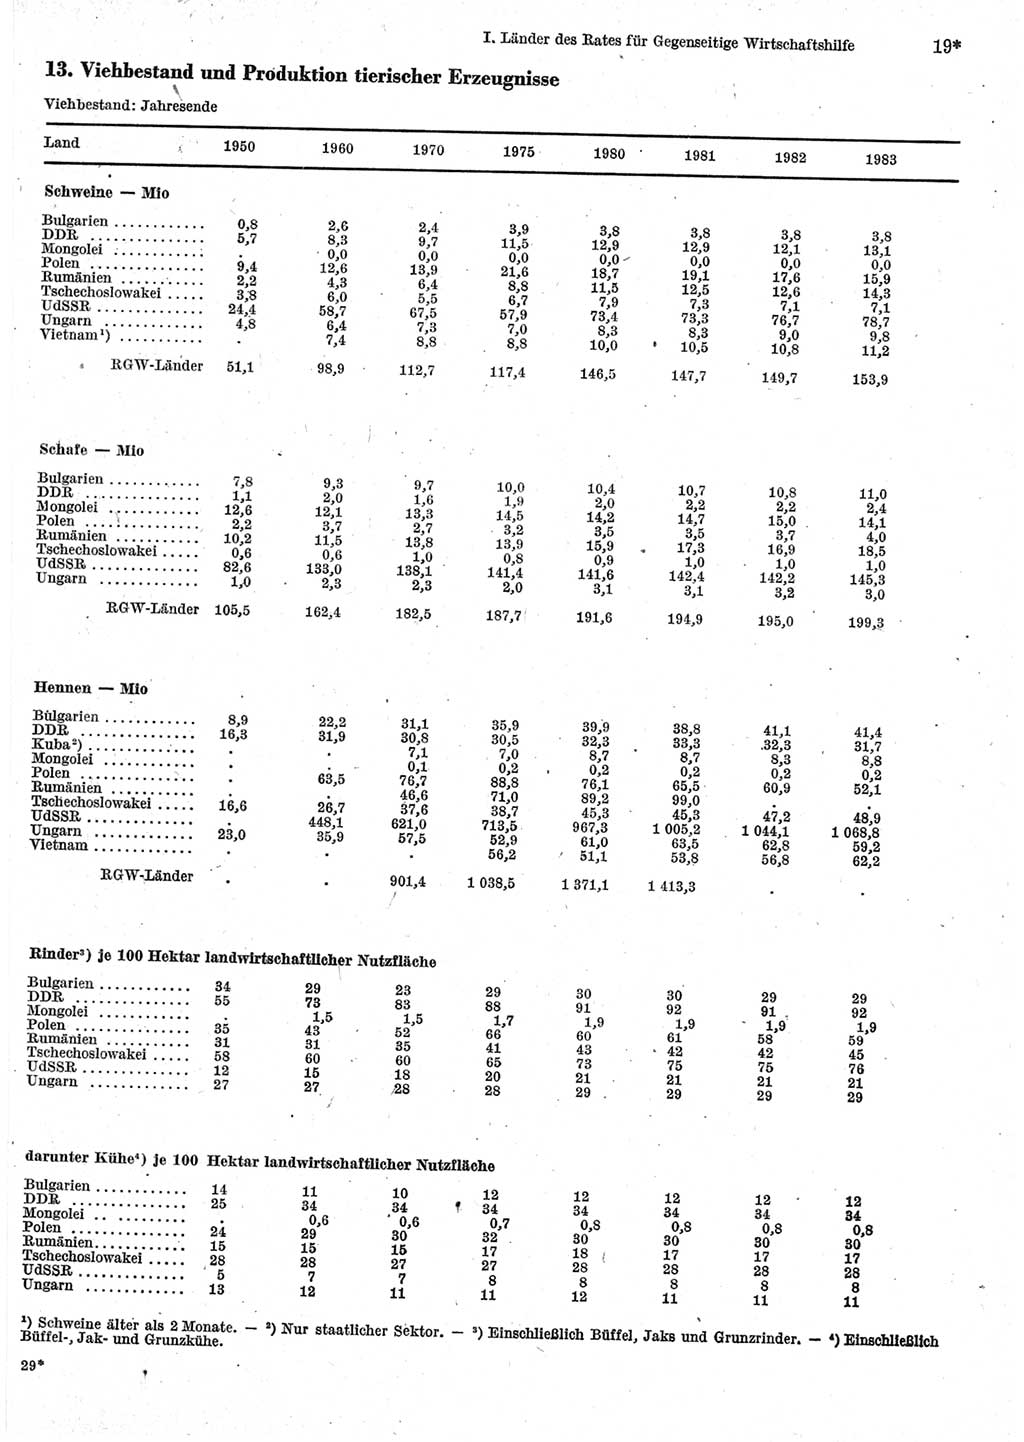 Statistisches Jahrbuch der Deutschen Demokratischen Republik (DDR) 1985, Seite 19 (Stat. Jb. DDR 1985, S. 19)